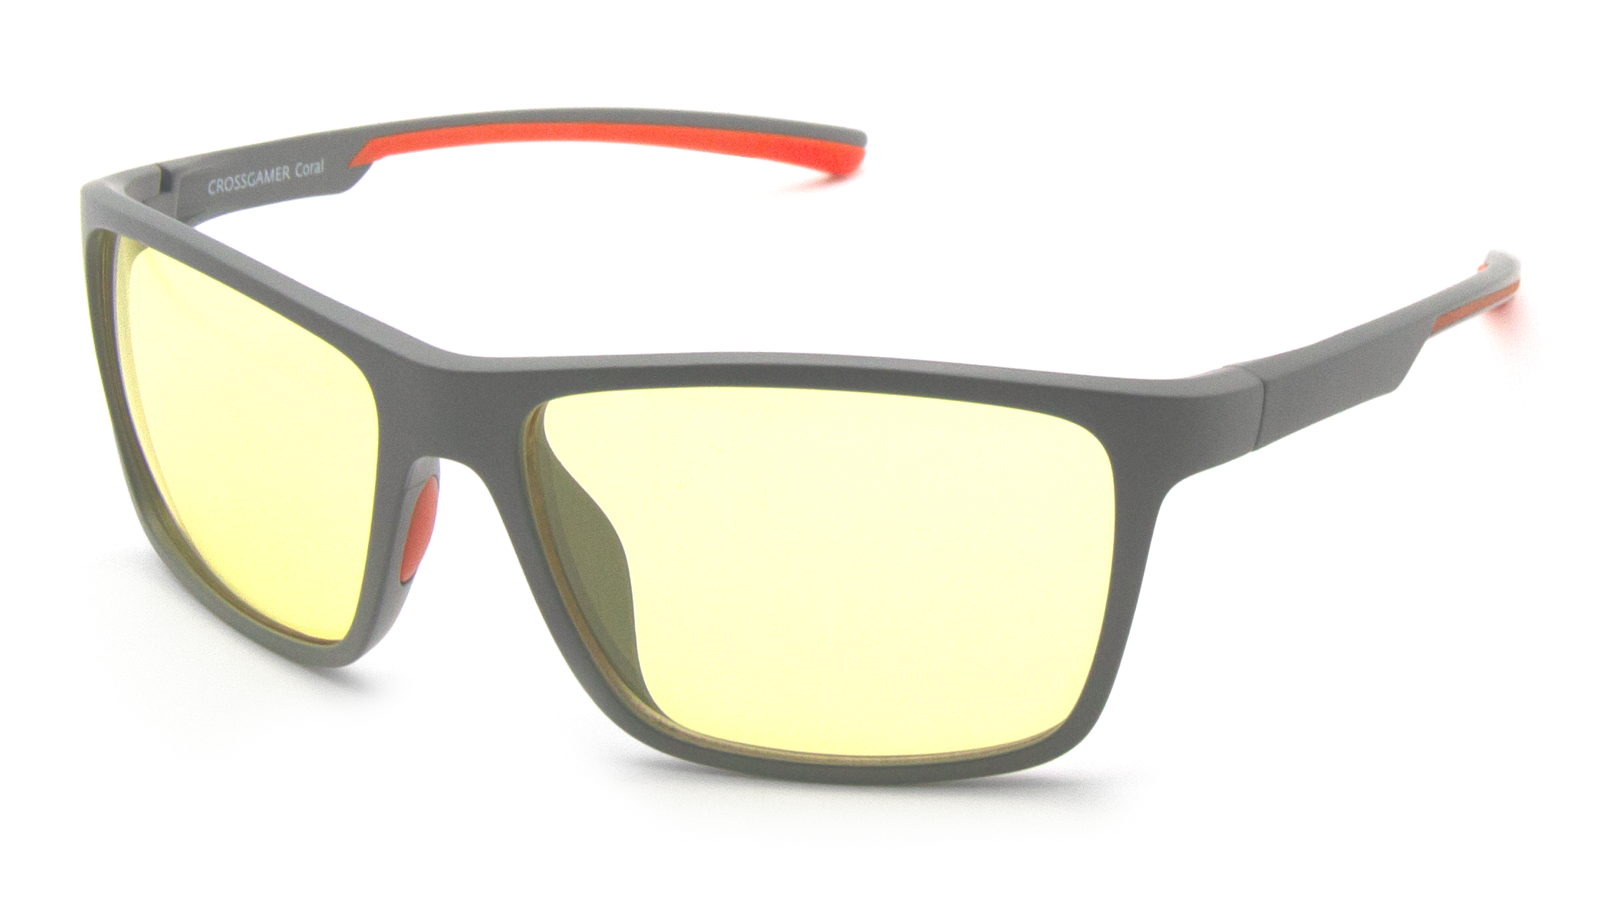 Очки для компьютера SP Glasses серый, оранжевый (CROSSGAMER_Coral)